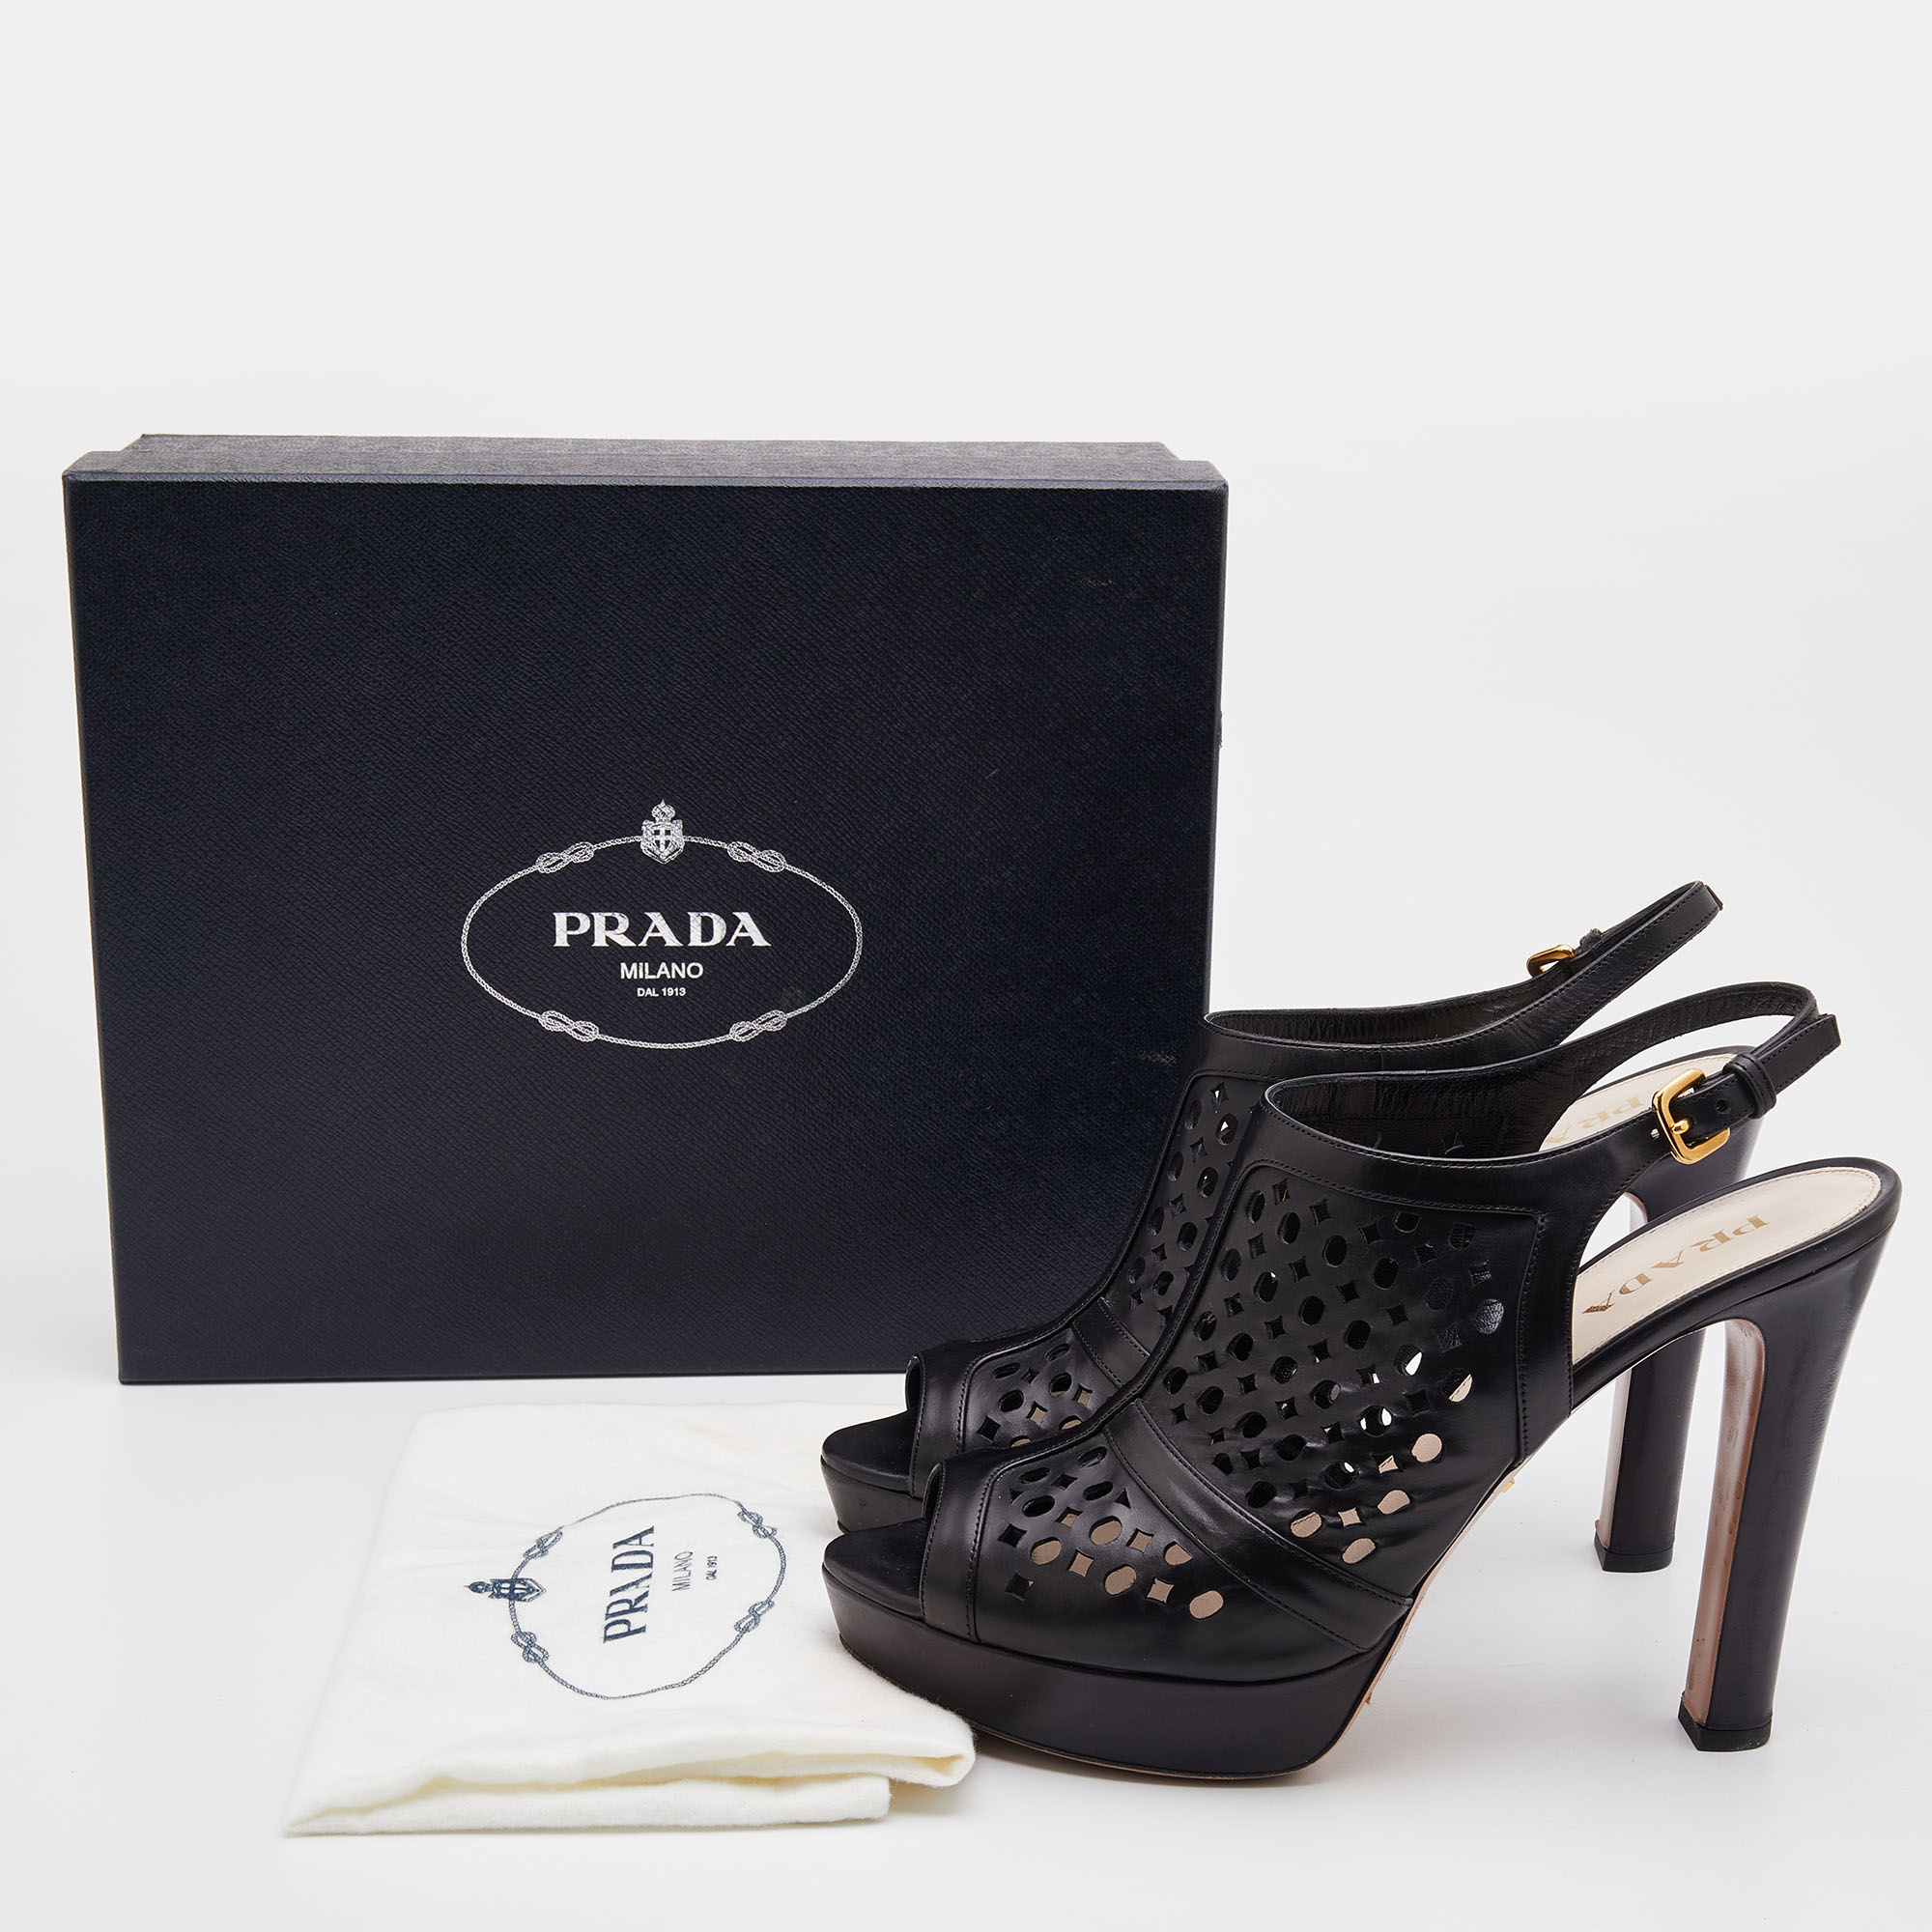 Prada Black Leather Laser Cut Slingback Platform Sandals Size 41